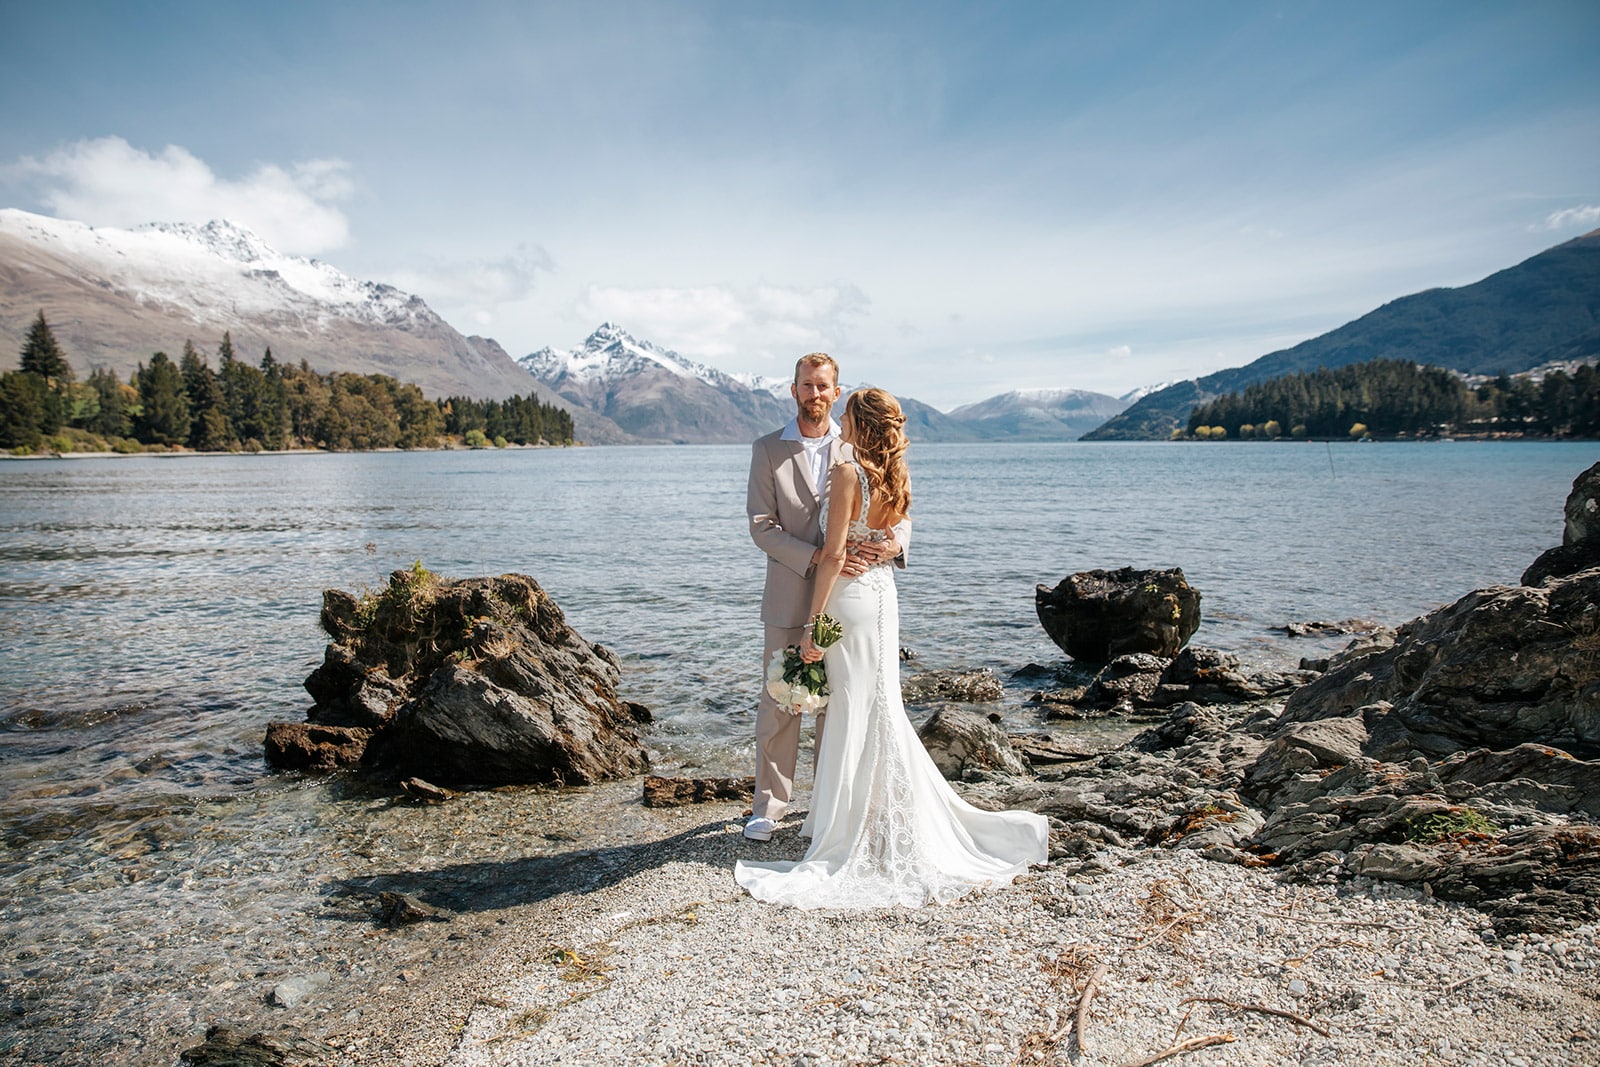 Spring Heli Wedding in Queenstown New Zealand